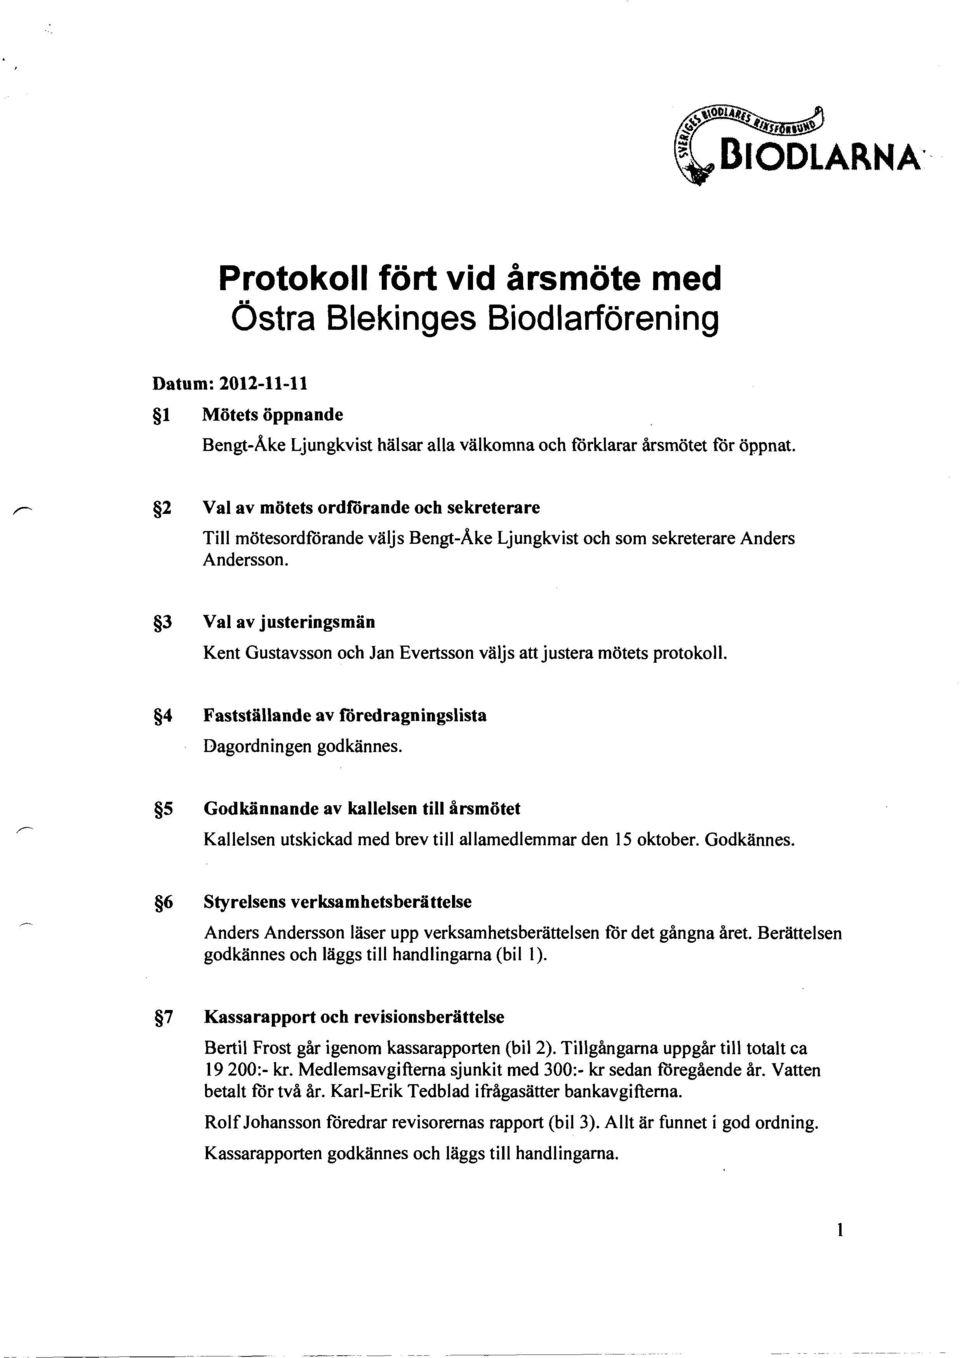 3 Val av justeringsmän Kent Gustavsson och Jan E vertsson väljs att justera mötets protokoll. 4 Fastställande av töredragningslista Dagordningen godkännes.